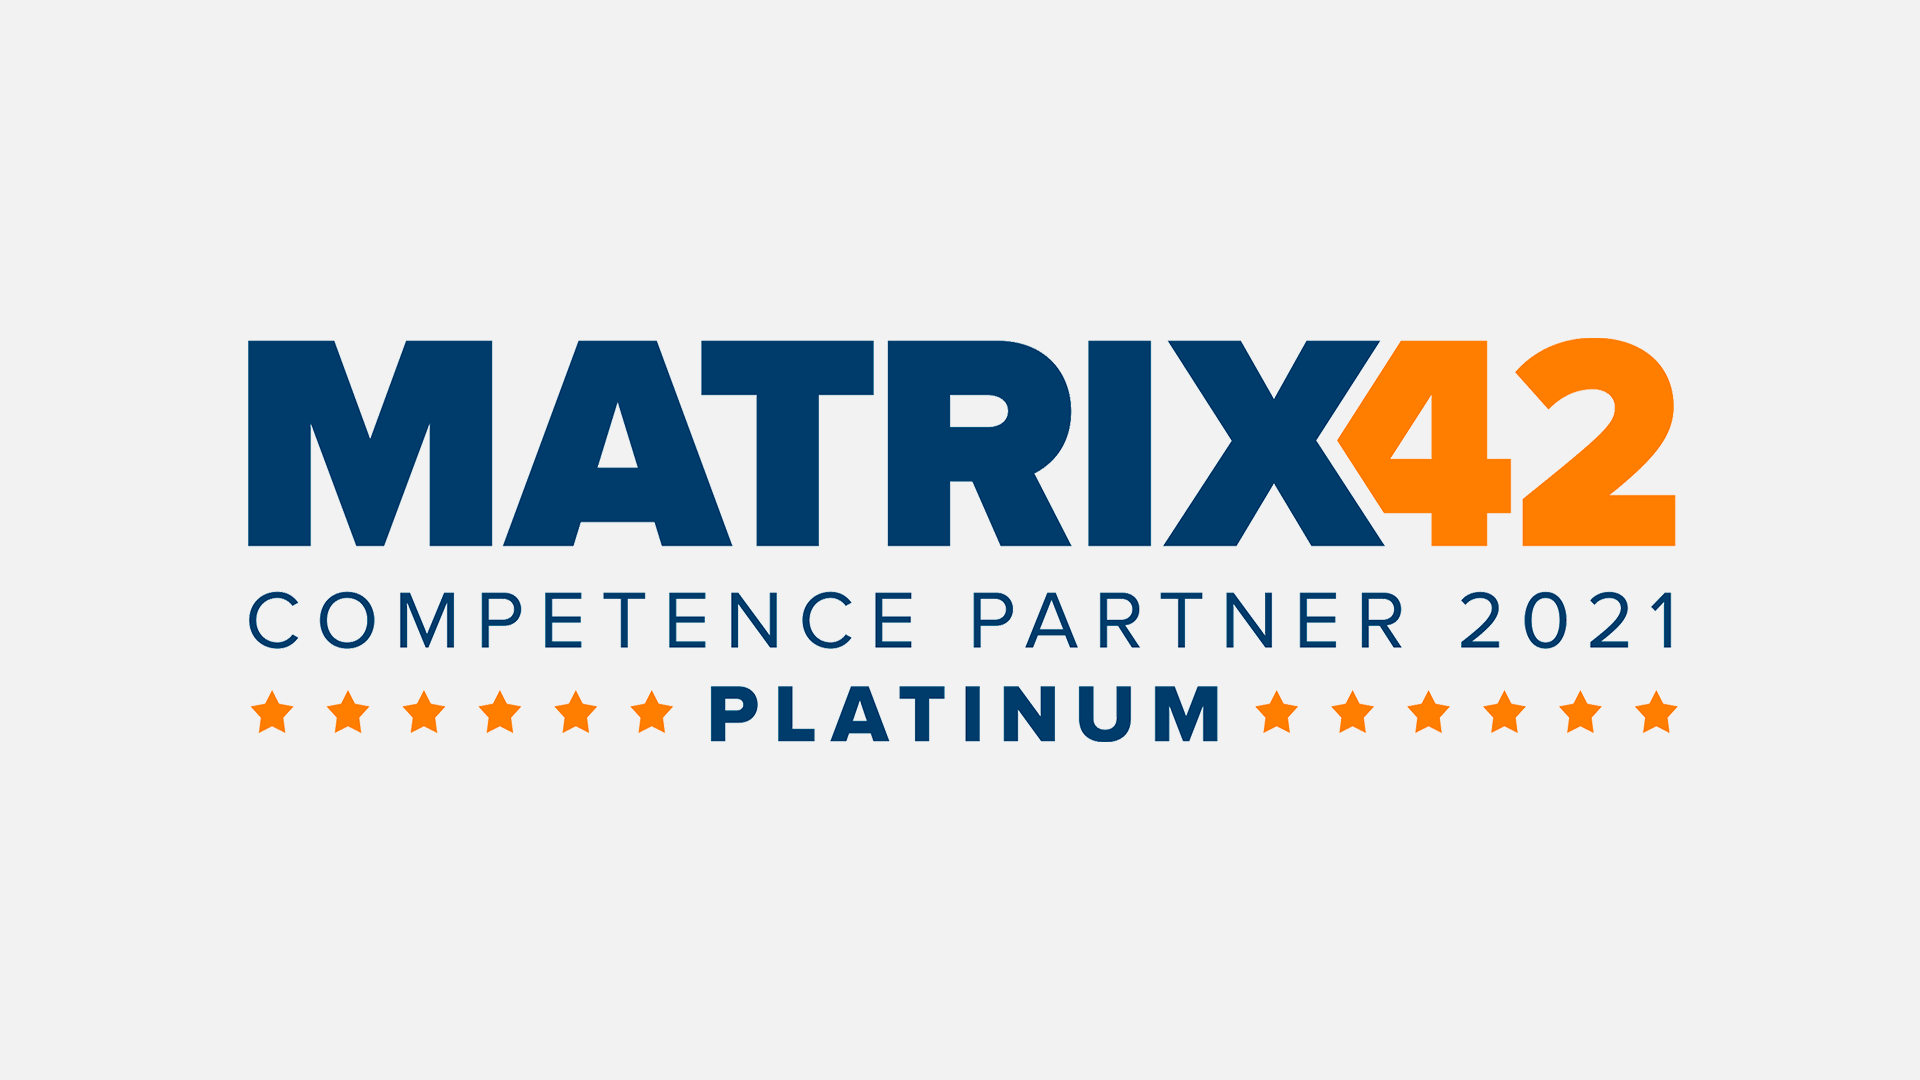 Matrix42 Platinum Partner Neuigkeit